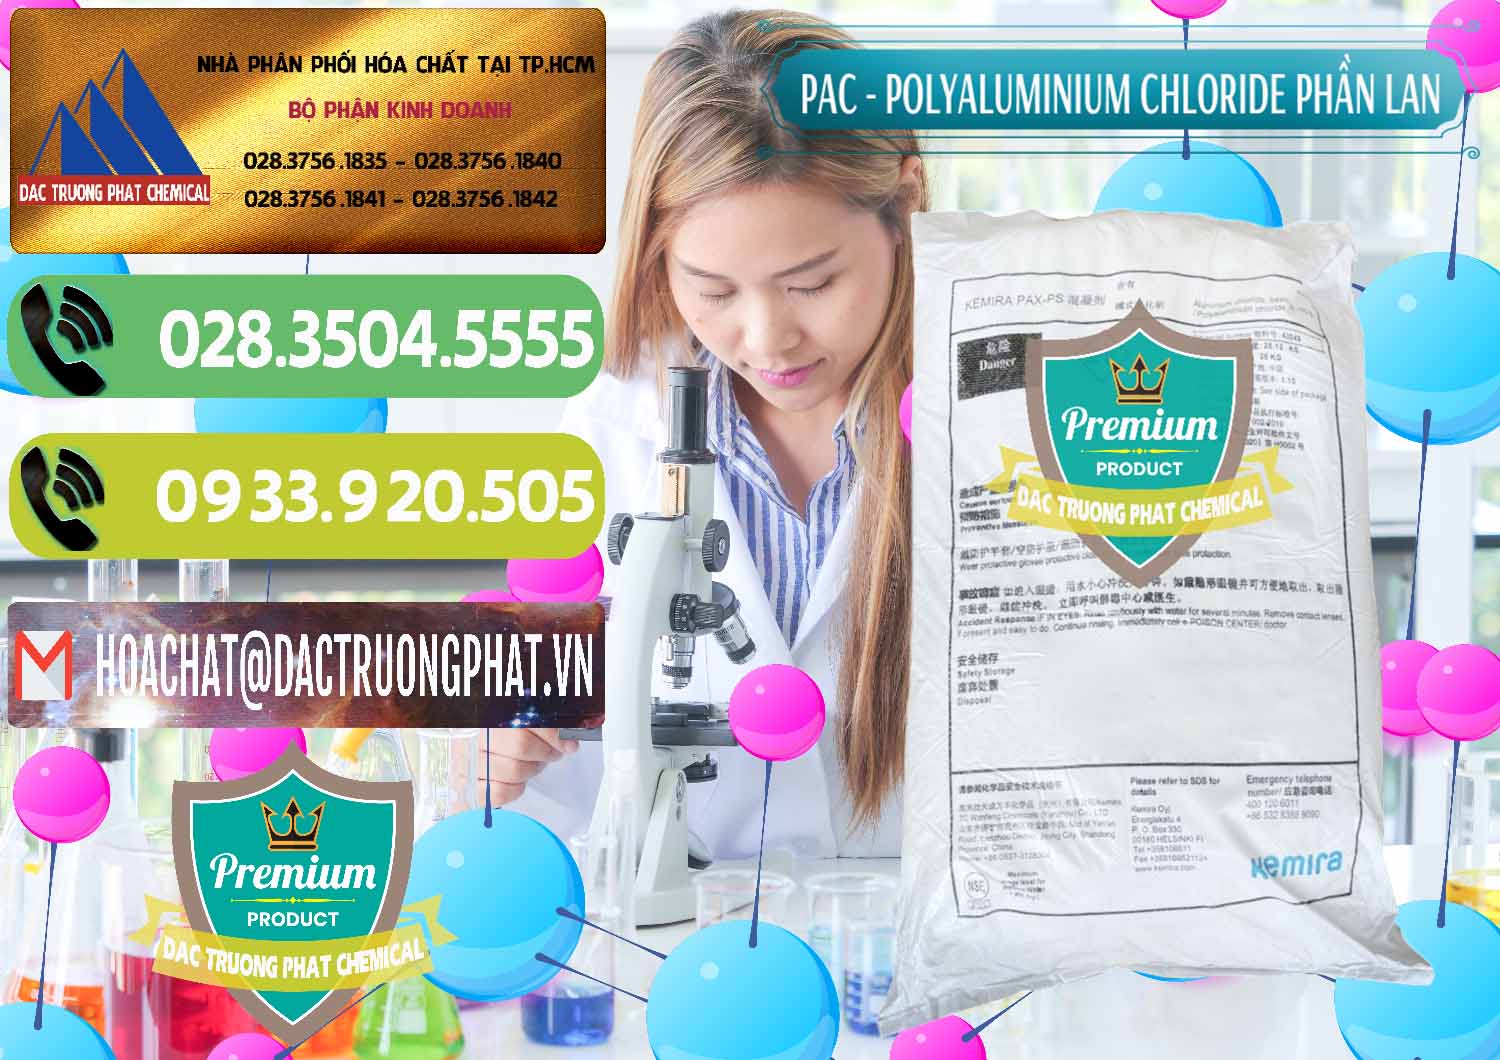 Chuyên bán - phân phối PAC - Polyaluminium Chloride Phần Lan Finland - 0383 - Chuyên nhập khẩu - phân phối hóa chất tại TP.HCM - hoachatmientay.vn